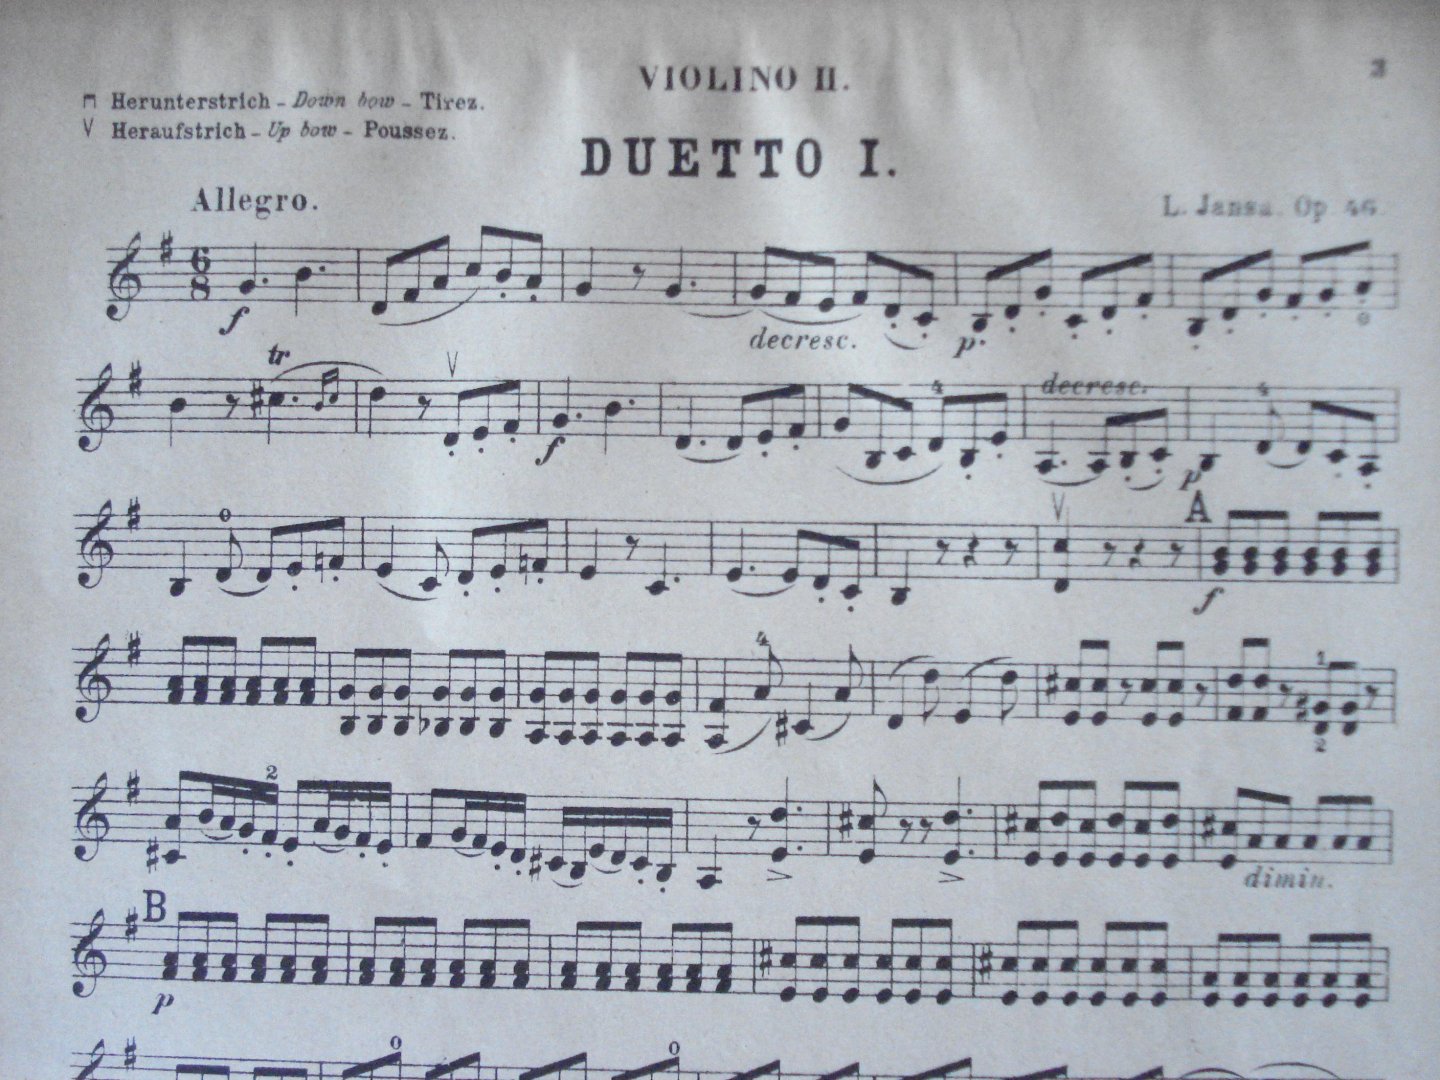 Jansa, L. - Jansa. Duette für 2 Violinen. Opus 46